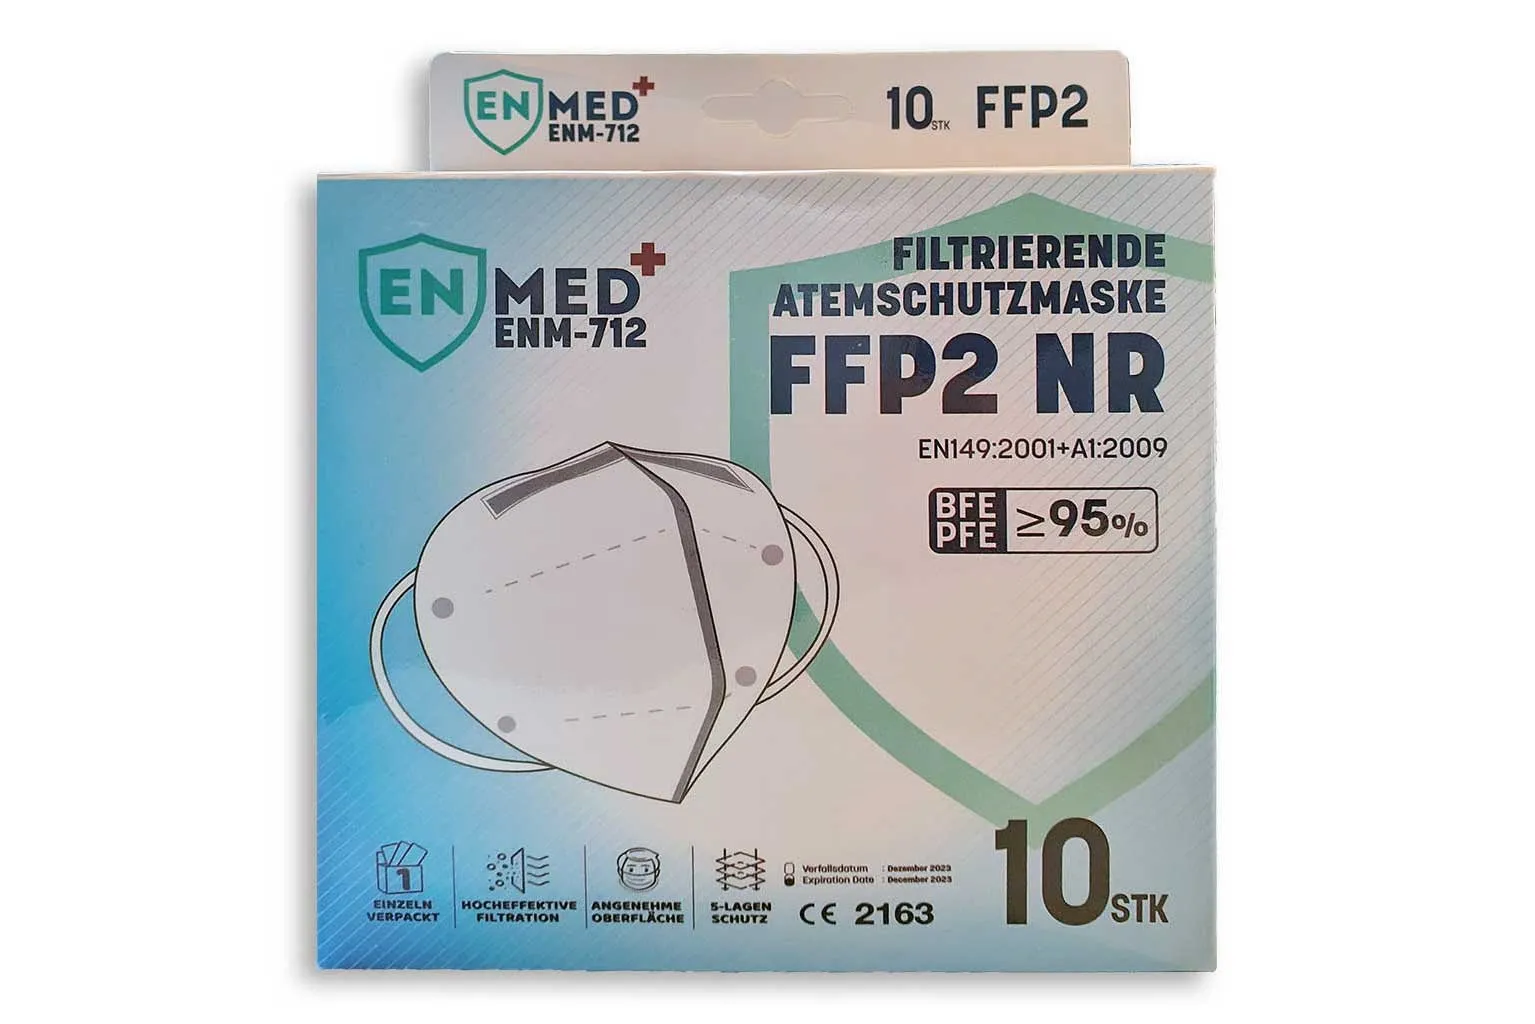 Masti de protectie cu filtru pentru particule FFP2, 10 bucati, Enmed 